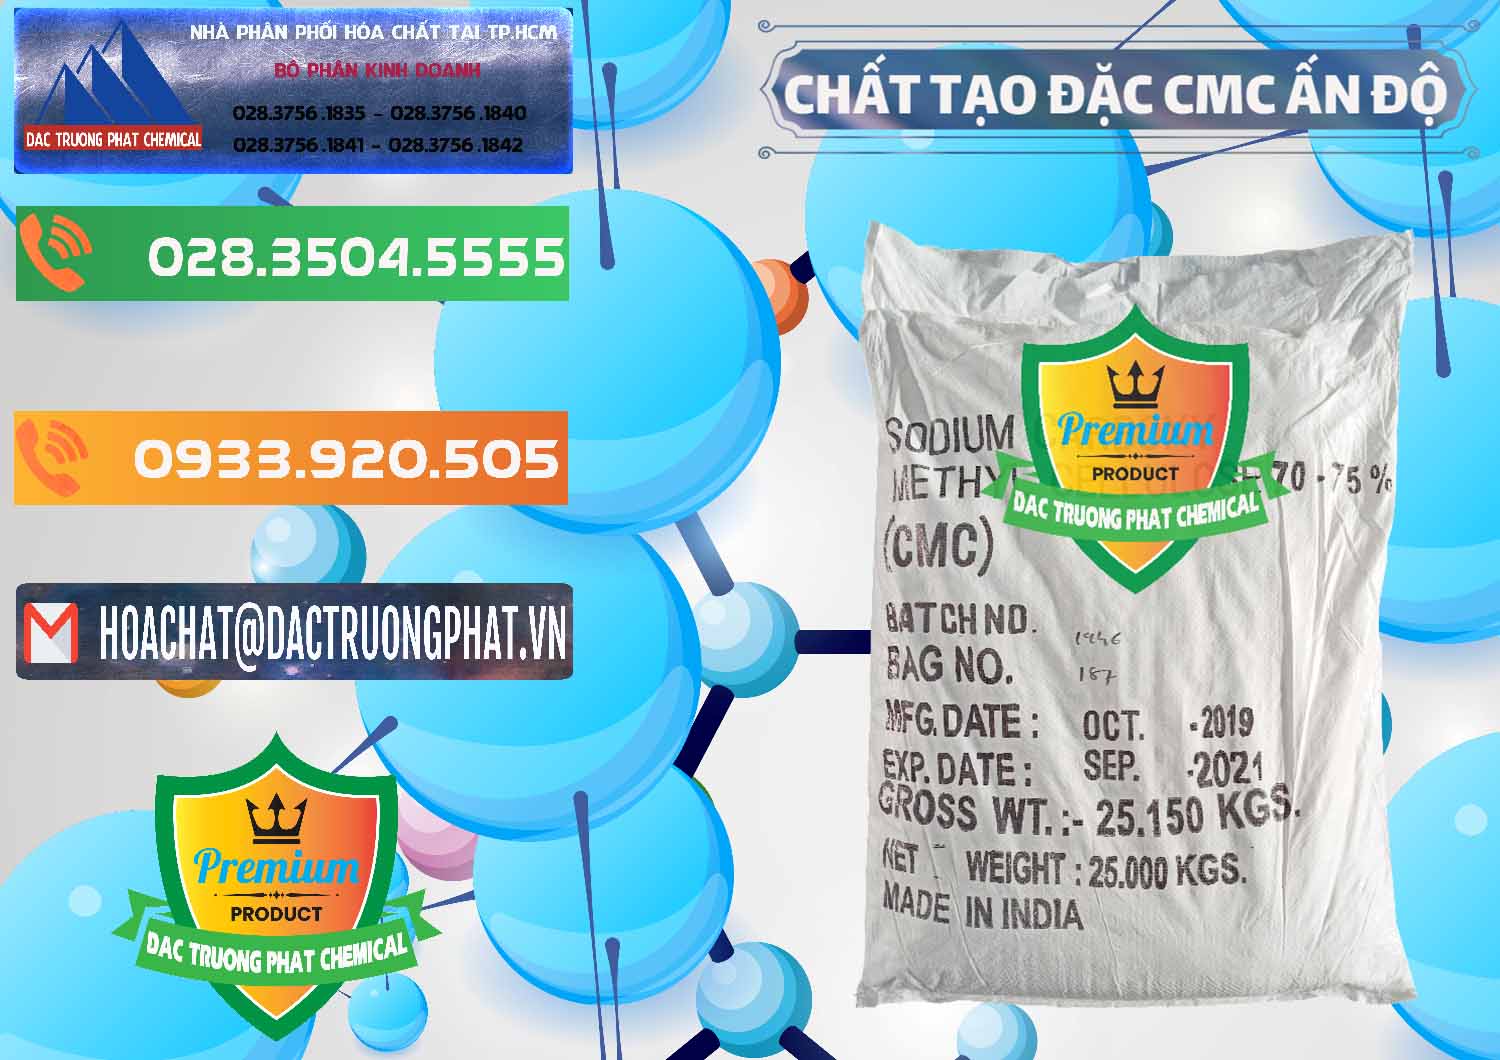 Nơi phân phối & bán Chất Tạo Đặc CMC - Carboxyl Methyl Cellulose Ấn Độ India - 0044 - Đơn vị kinh doanh & cung cấp hóa chất tại TP.HCM - hoachatxulynuoc.com.vn